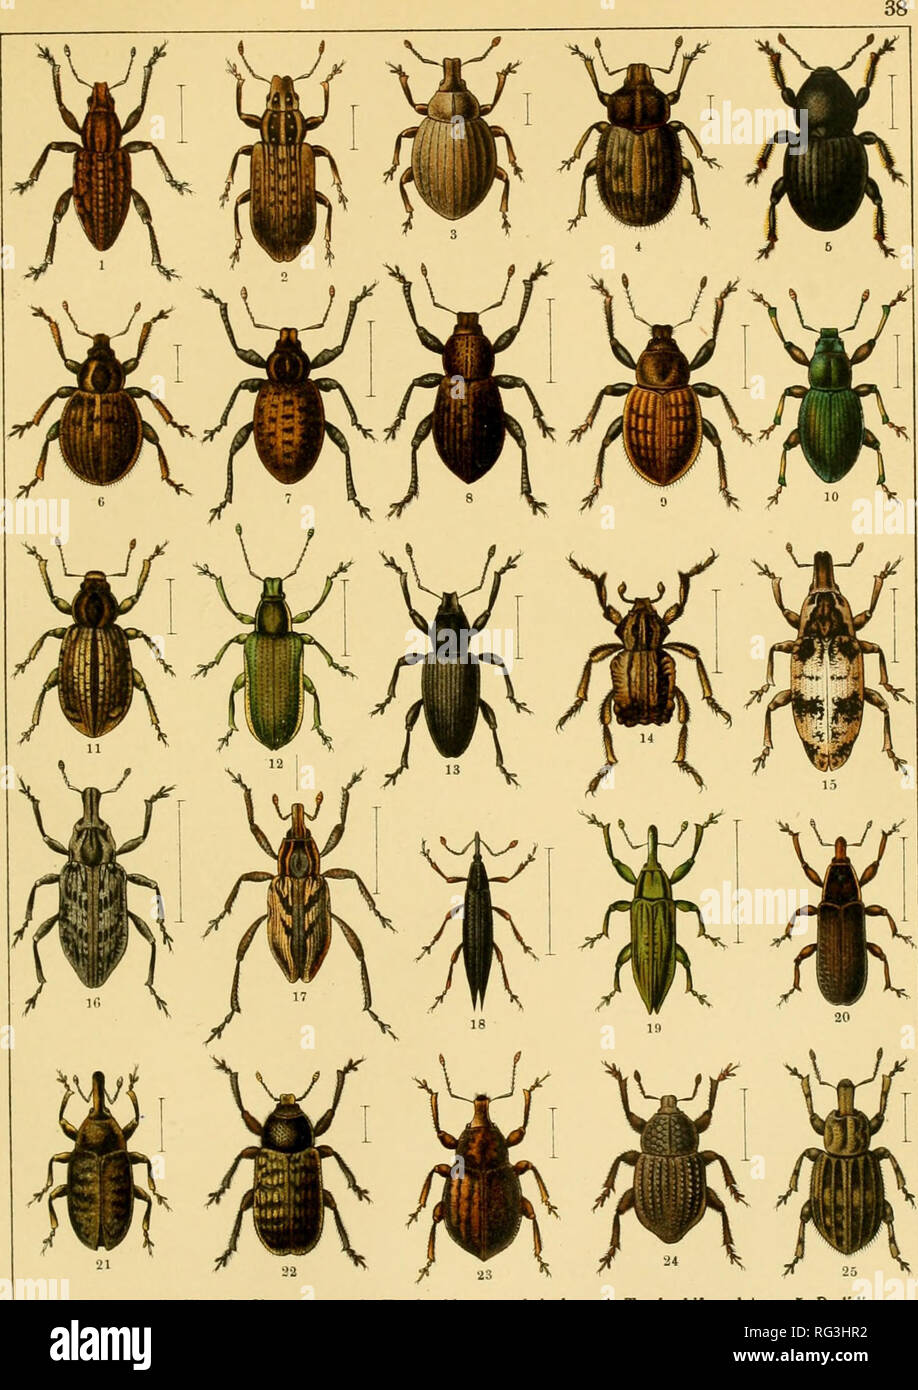 . Calwers Käferbuch; einfürhrung in die kenntnis der käfer Europas. Beetles. 1. Sitona puncticollis. 2. Sit. griseus. 3. Trachyphloeus scabrinilus. 4. Trach. bifoveolatus. 5. Psalidium maxillosum. 6. Cneorrhinus plagiatus. 7. Liophloeus tessellalus. 8. Geonemus flabellipes. 9. Barynotus ob- scurus. 10. Amomphus Westringi. 11. Thylacites fritillum. 12. Chlorophanus viridis. 13. Tanymecus pal- liatus. 14. Brachycerus undatus. 15. Chromoderes fasciatus. 16. Coniocleonus nebulosus. 17. Con. nigro- suturatus. 18. Lixus paraplecticus. 19. Lix. iridis. 20. Lix. vilis. 21. Larinus planus. 22. Rhinocyl Stock Photo